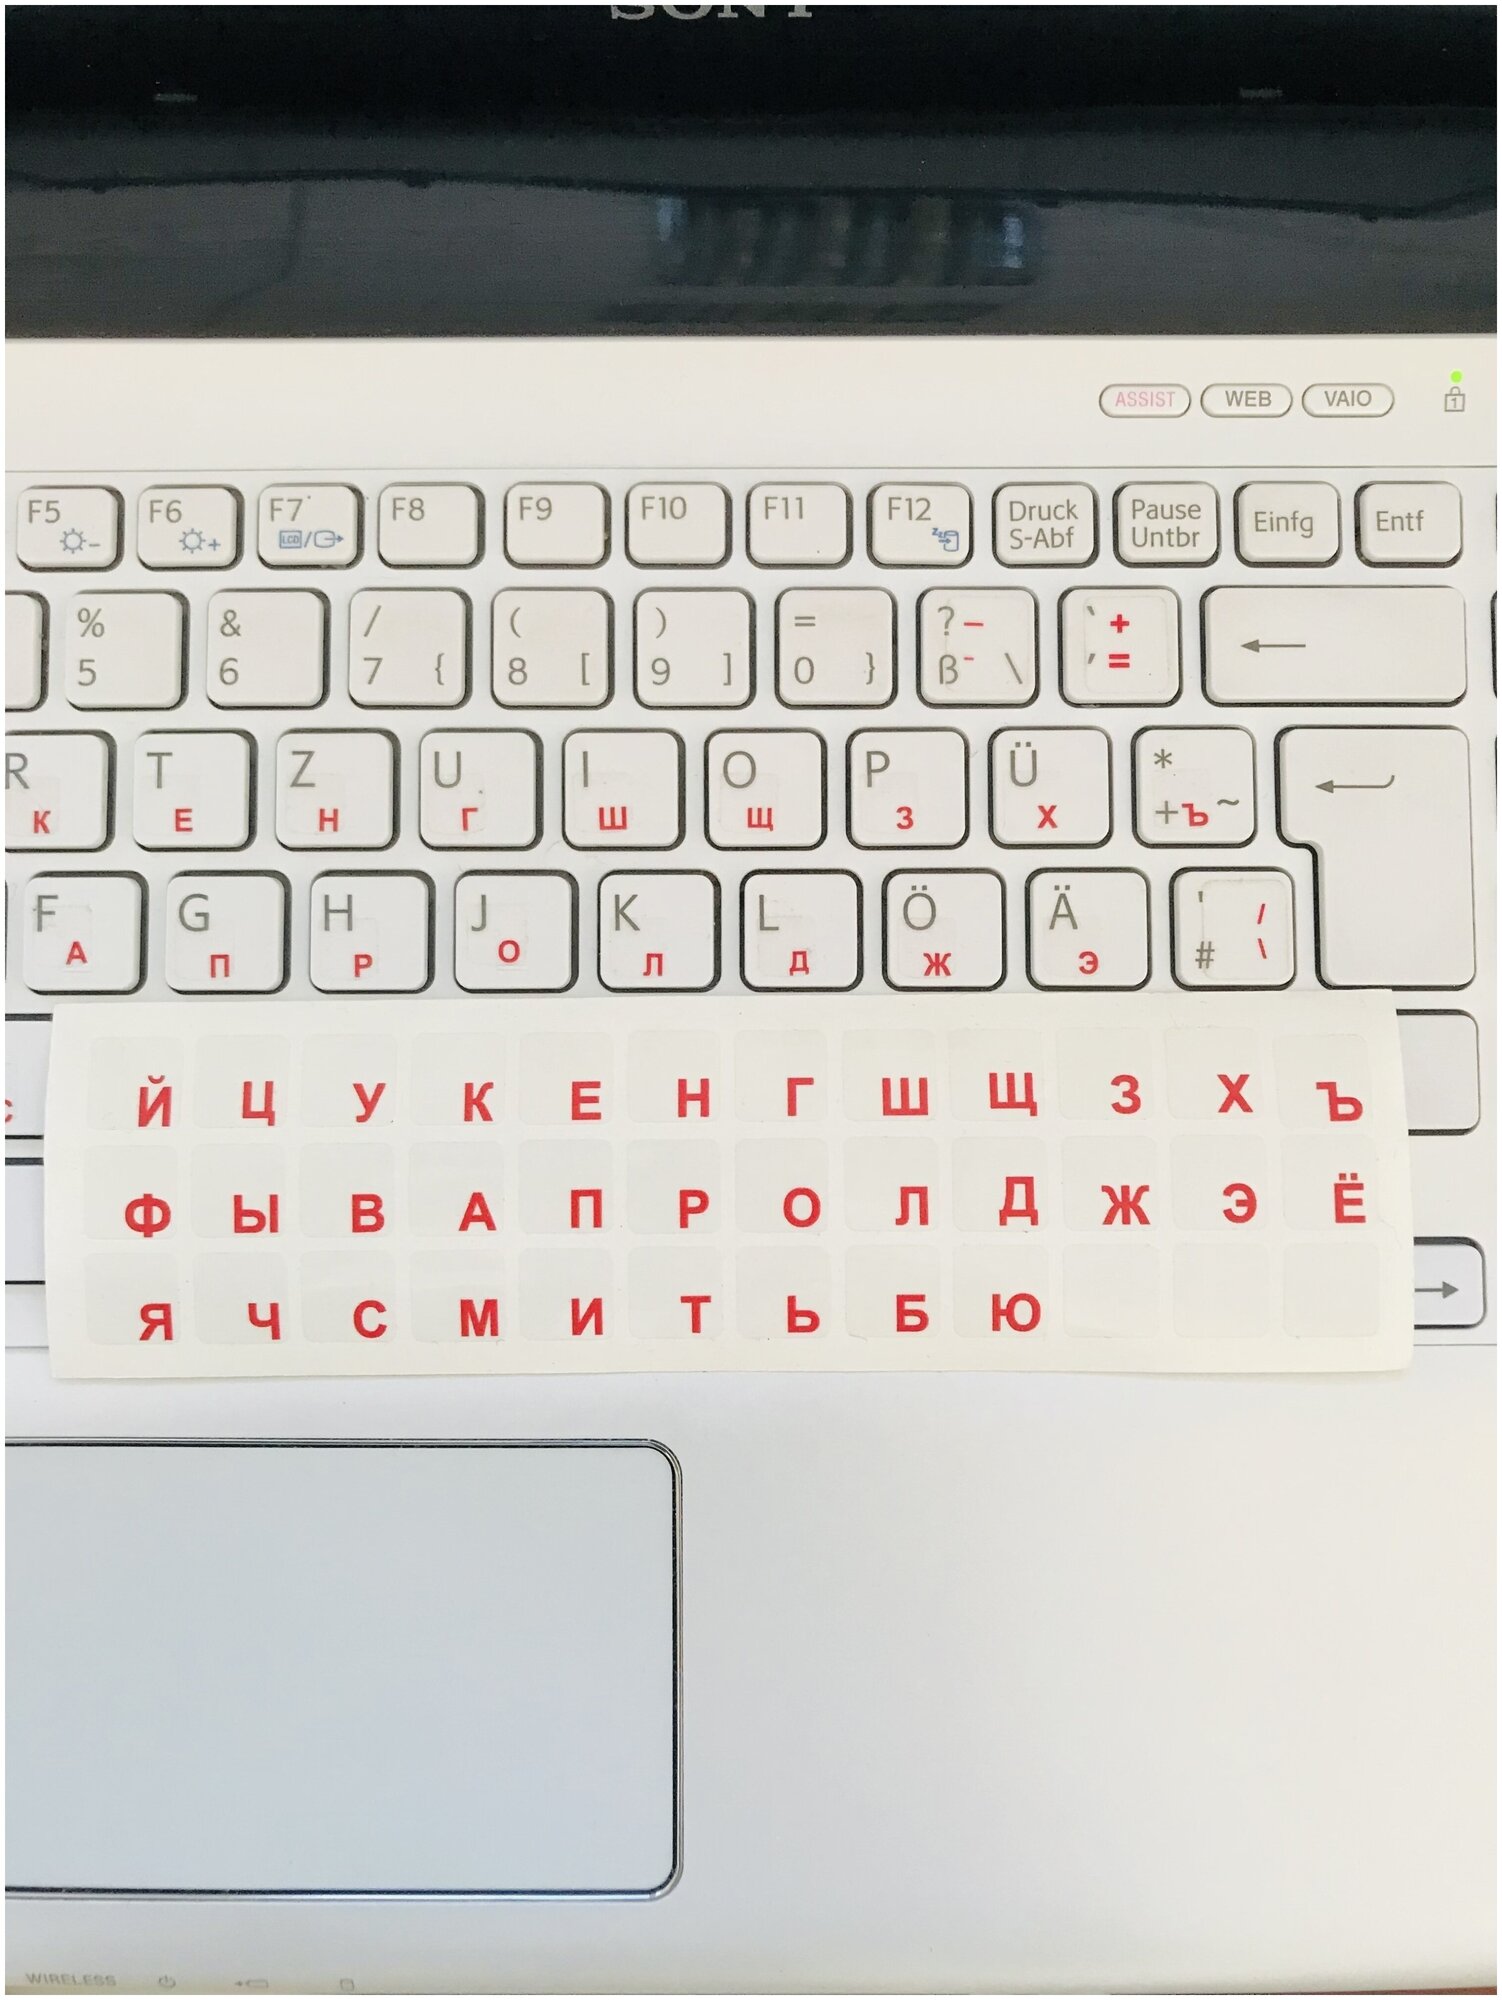 Наклейки на клавиатуру малые PMGLabe 8*8мм. УФ печать спеканием. Плёнка с микропорами для улицы. Красные буквы.